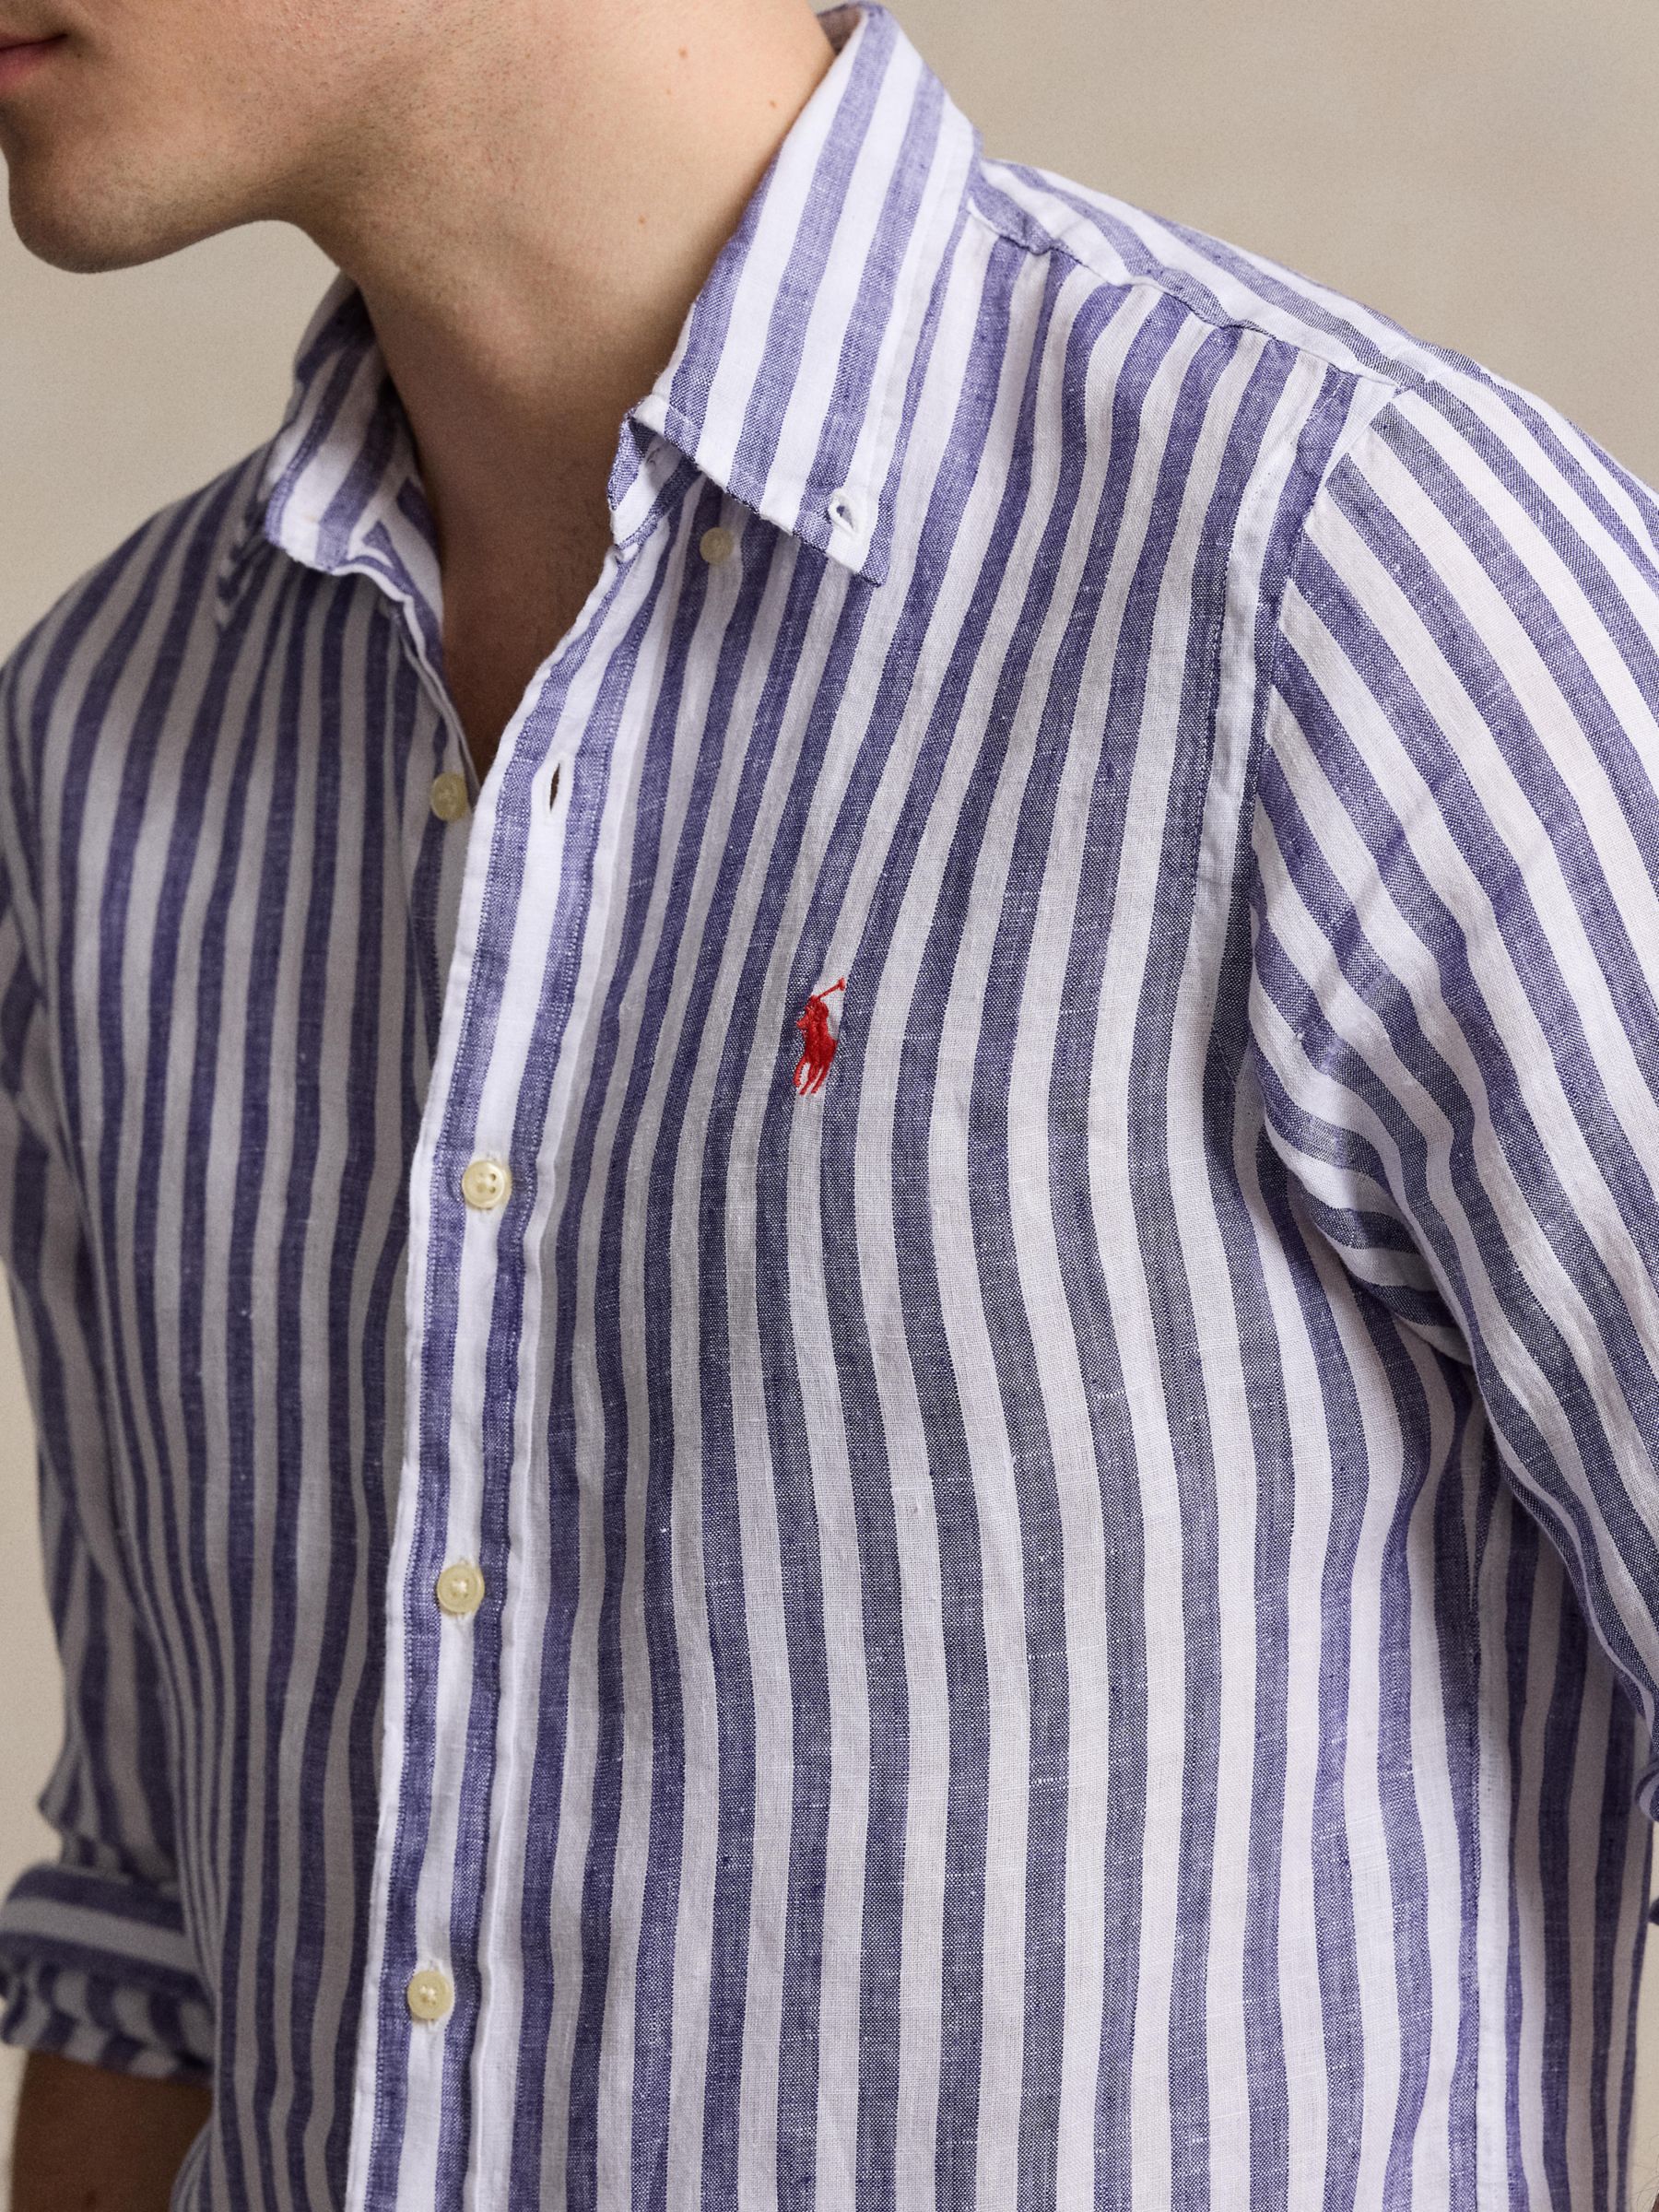 Buy Ralph Lauren Stripe Linen Long Sleeve Shirt Online at johnlewis.com